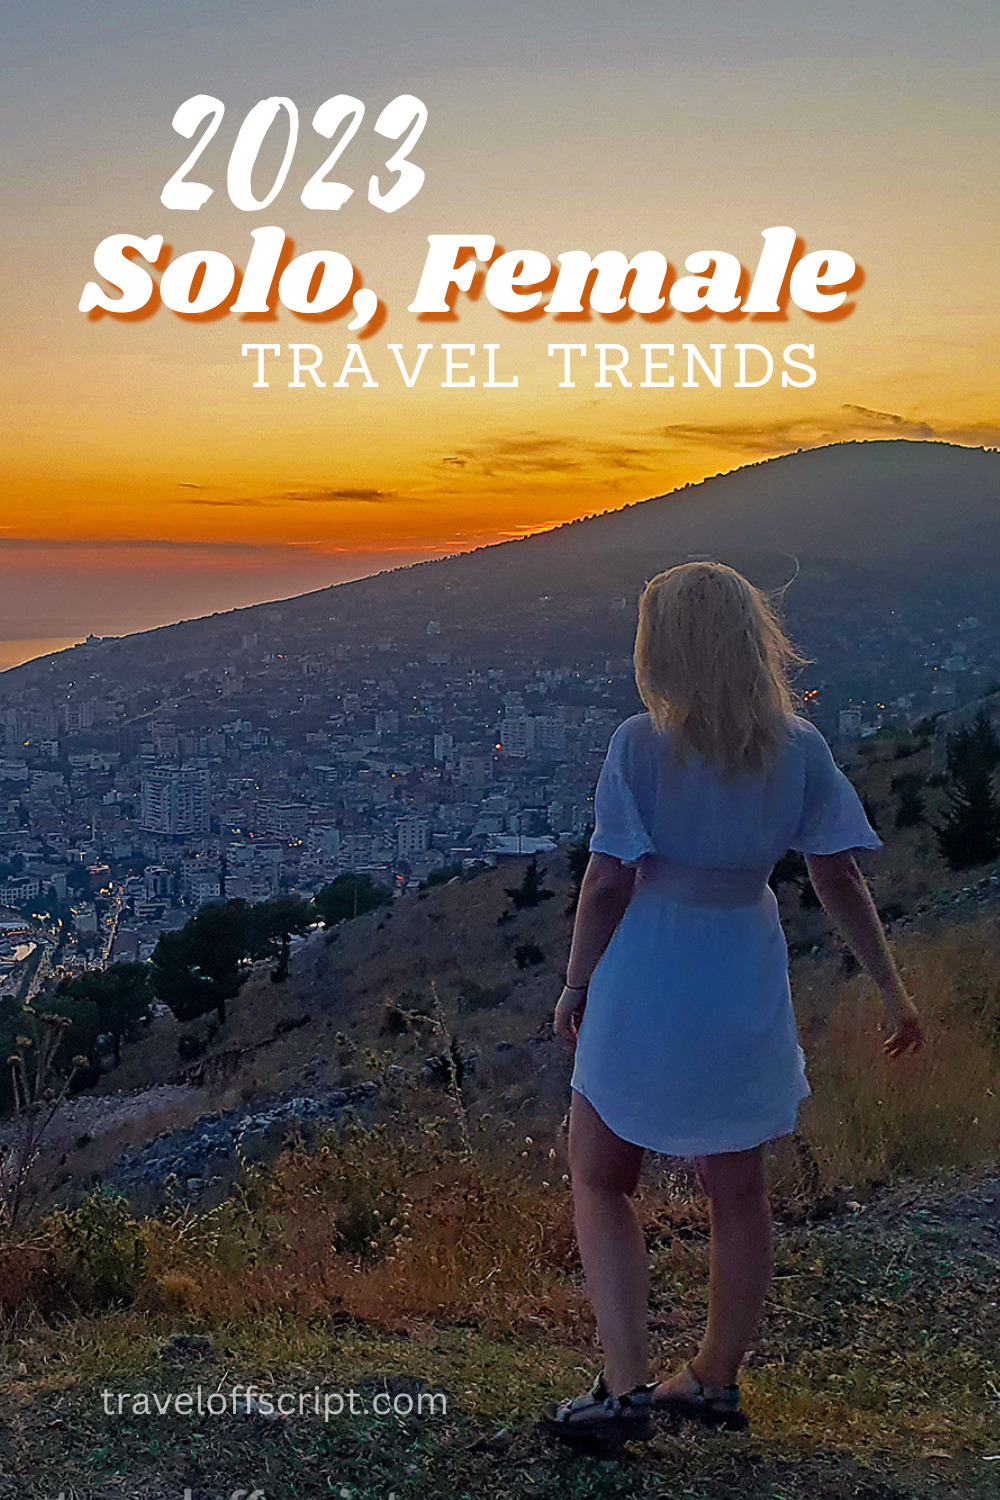 2023 Solo, Female Travel Trends - pinterest